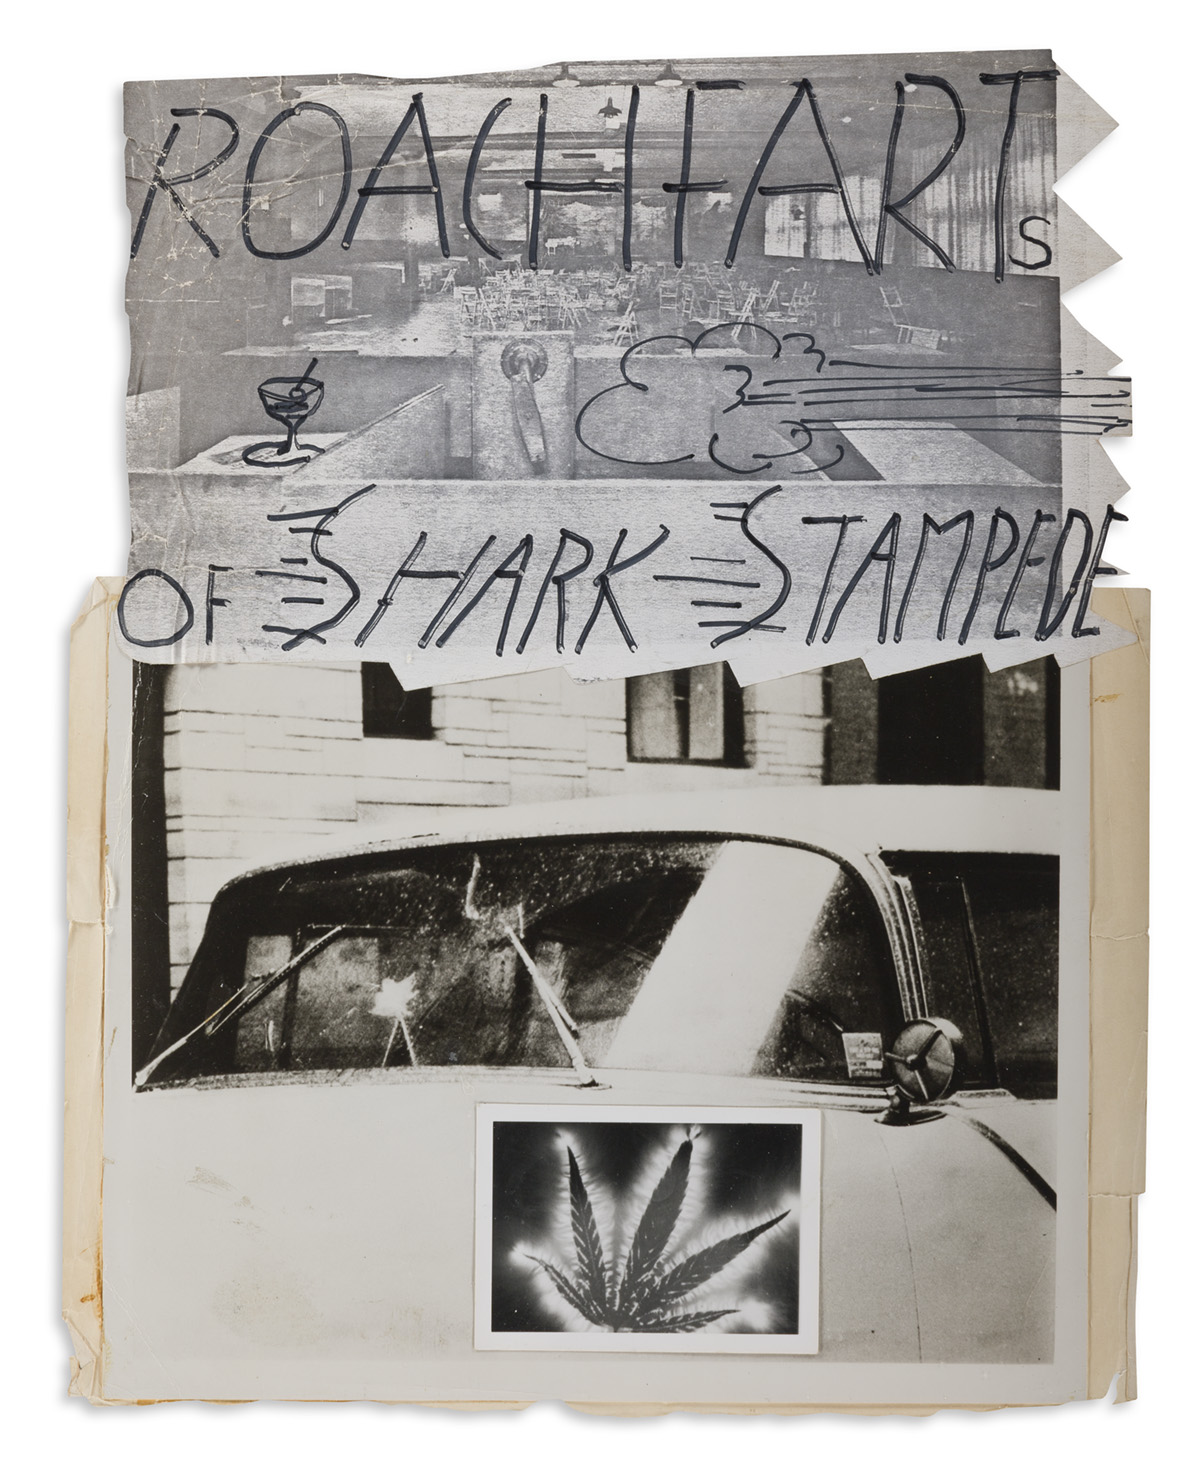 JACK SMITH (1932-1989) Roach Farts of Shark Stampede.